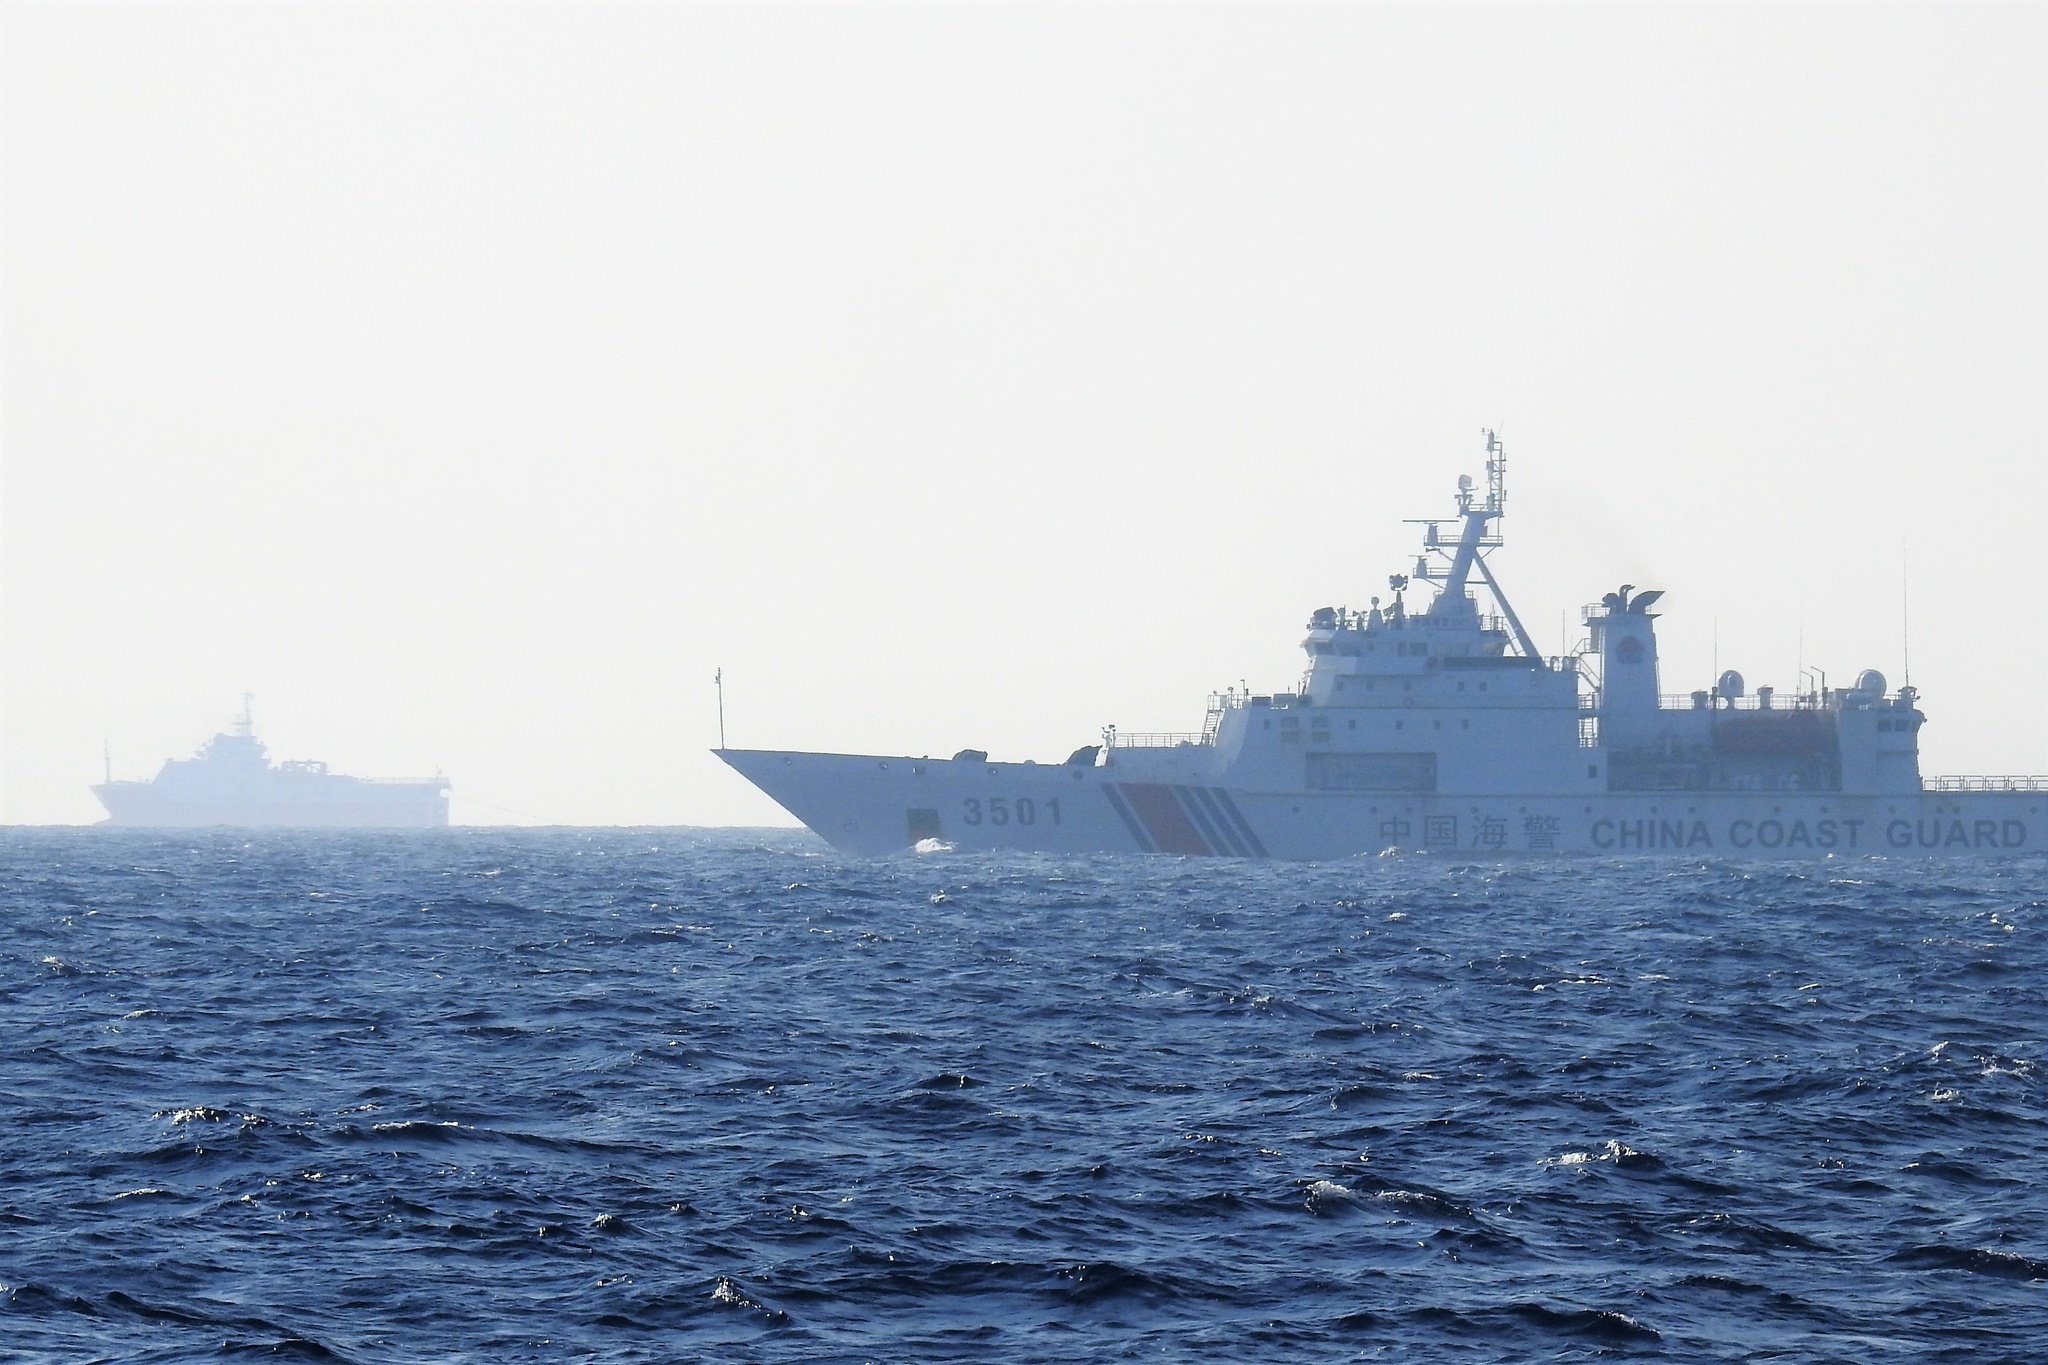 Vi phạm luật pháp quốc tế, Trung Quốc tăng cường kiểm soát Biển Đông - ảnh 2